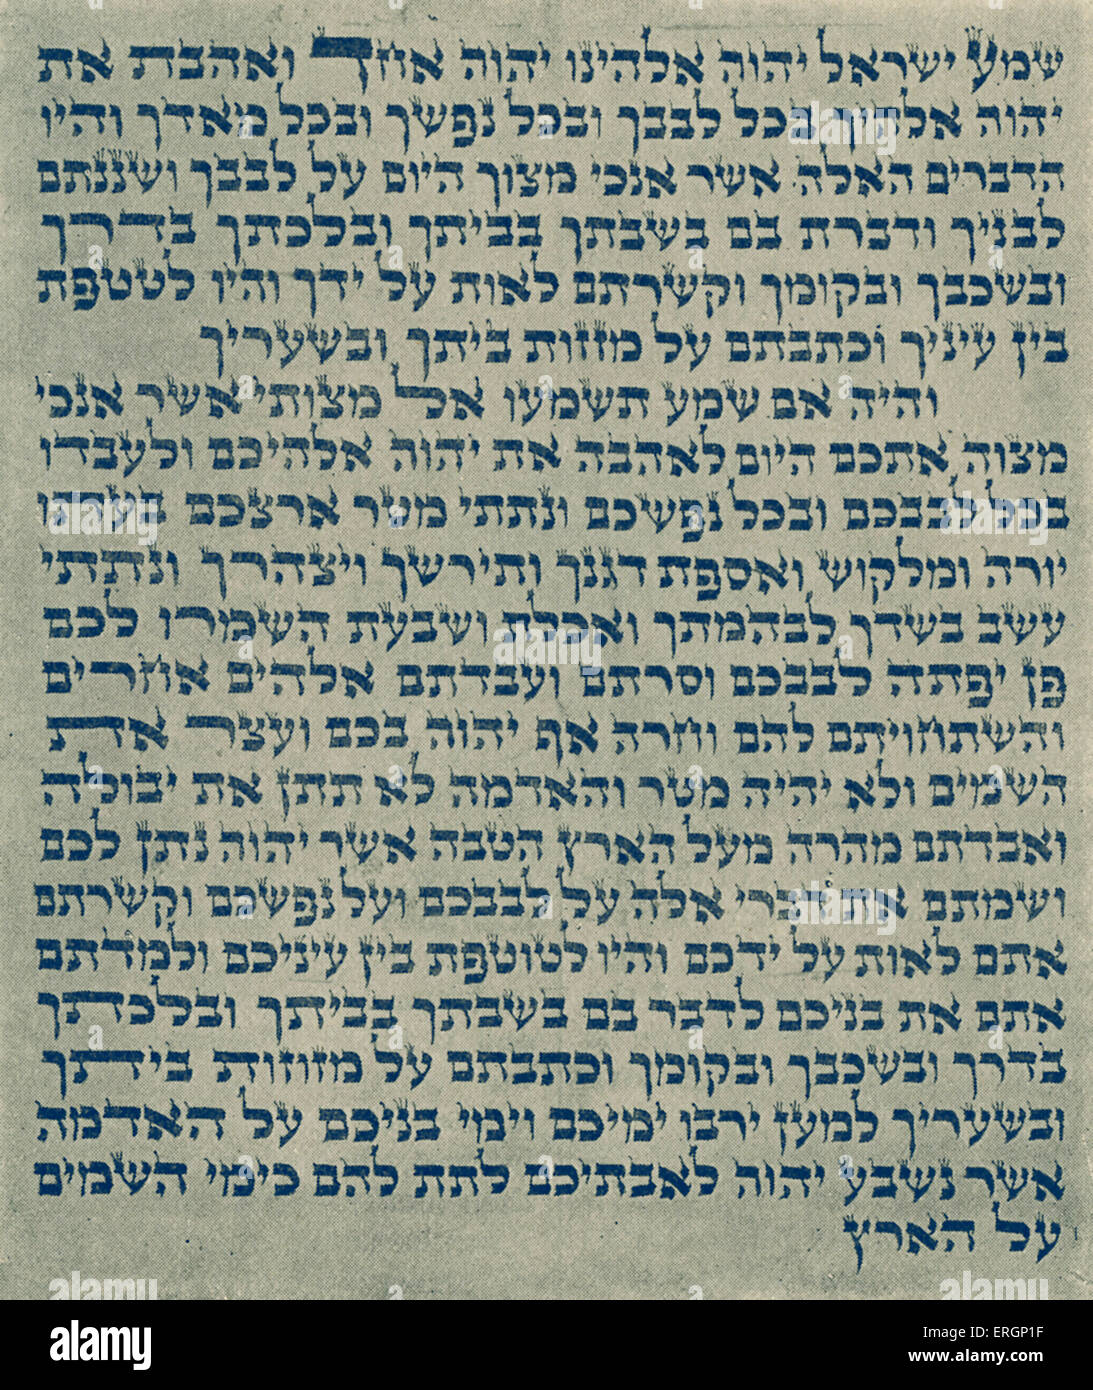 Mesusa Scroll, ein Stück Pergament mit dem Gebet "Shema Yisrael" in Hebräisch, eingeschrieben. Das Pergament ist aufgerollt, enthalten in einem dekorativen Fall und an den Türpfosten der jüdischen Häuser. Stockfoto